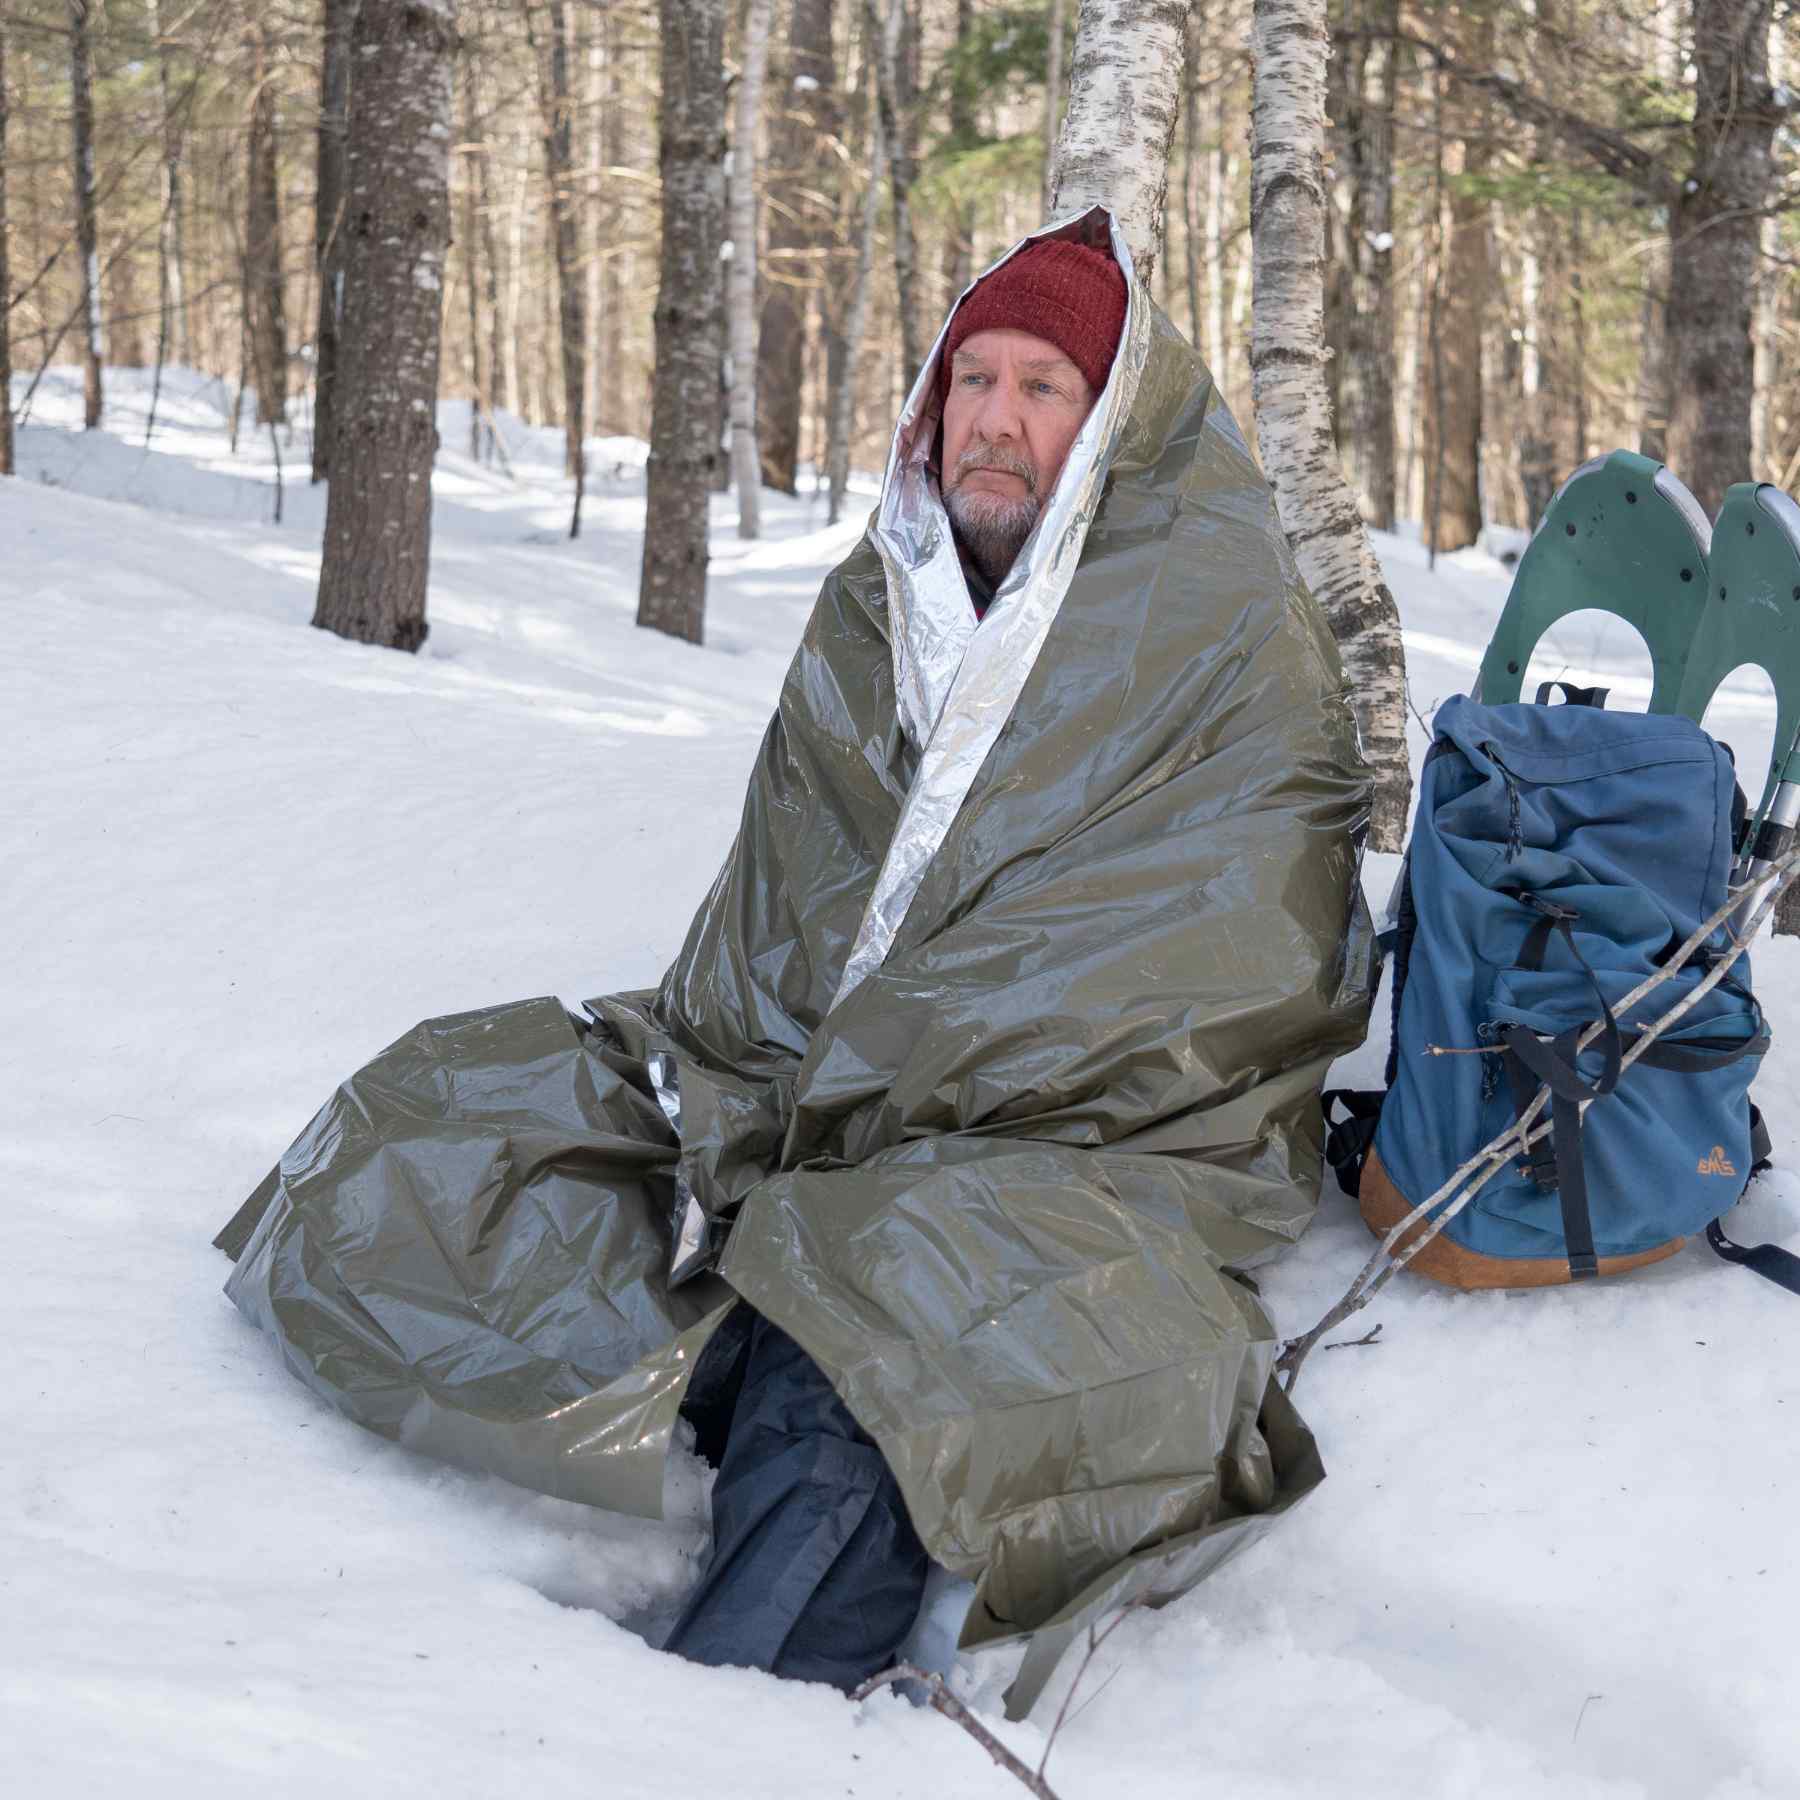 Heavy Duty Emergency Blanket man wrapped in blanket in snow